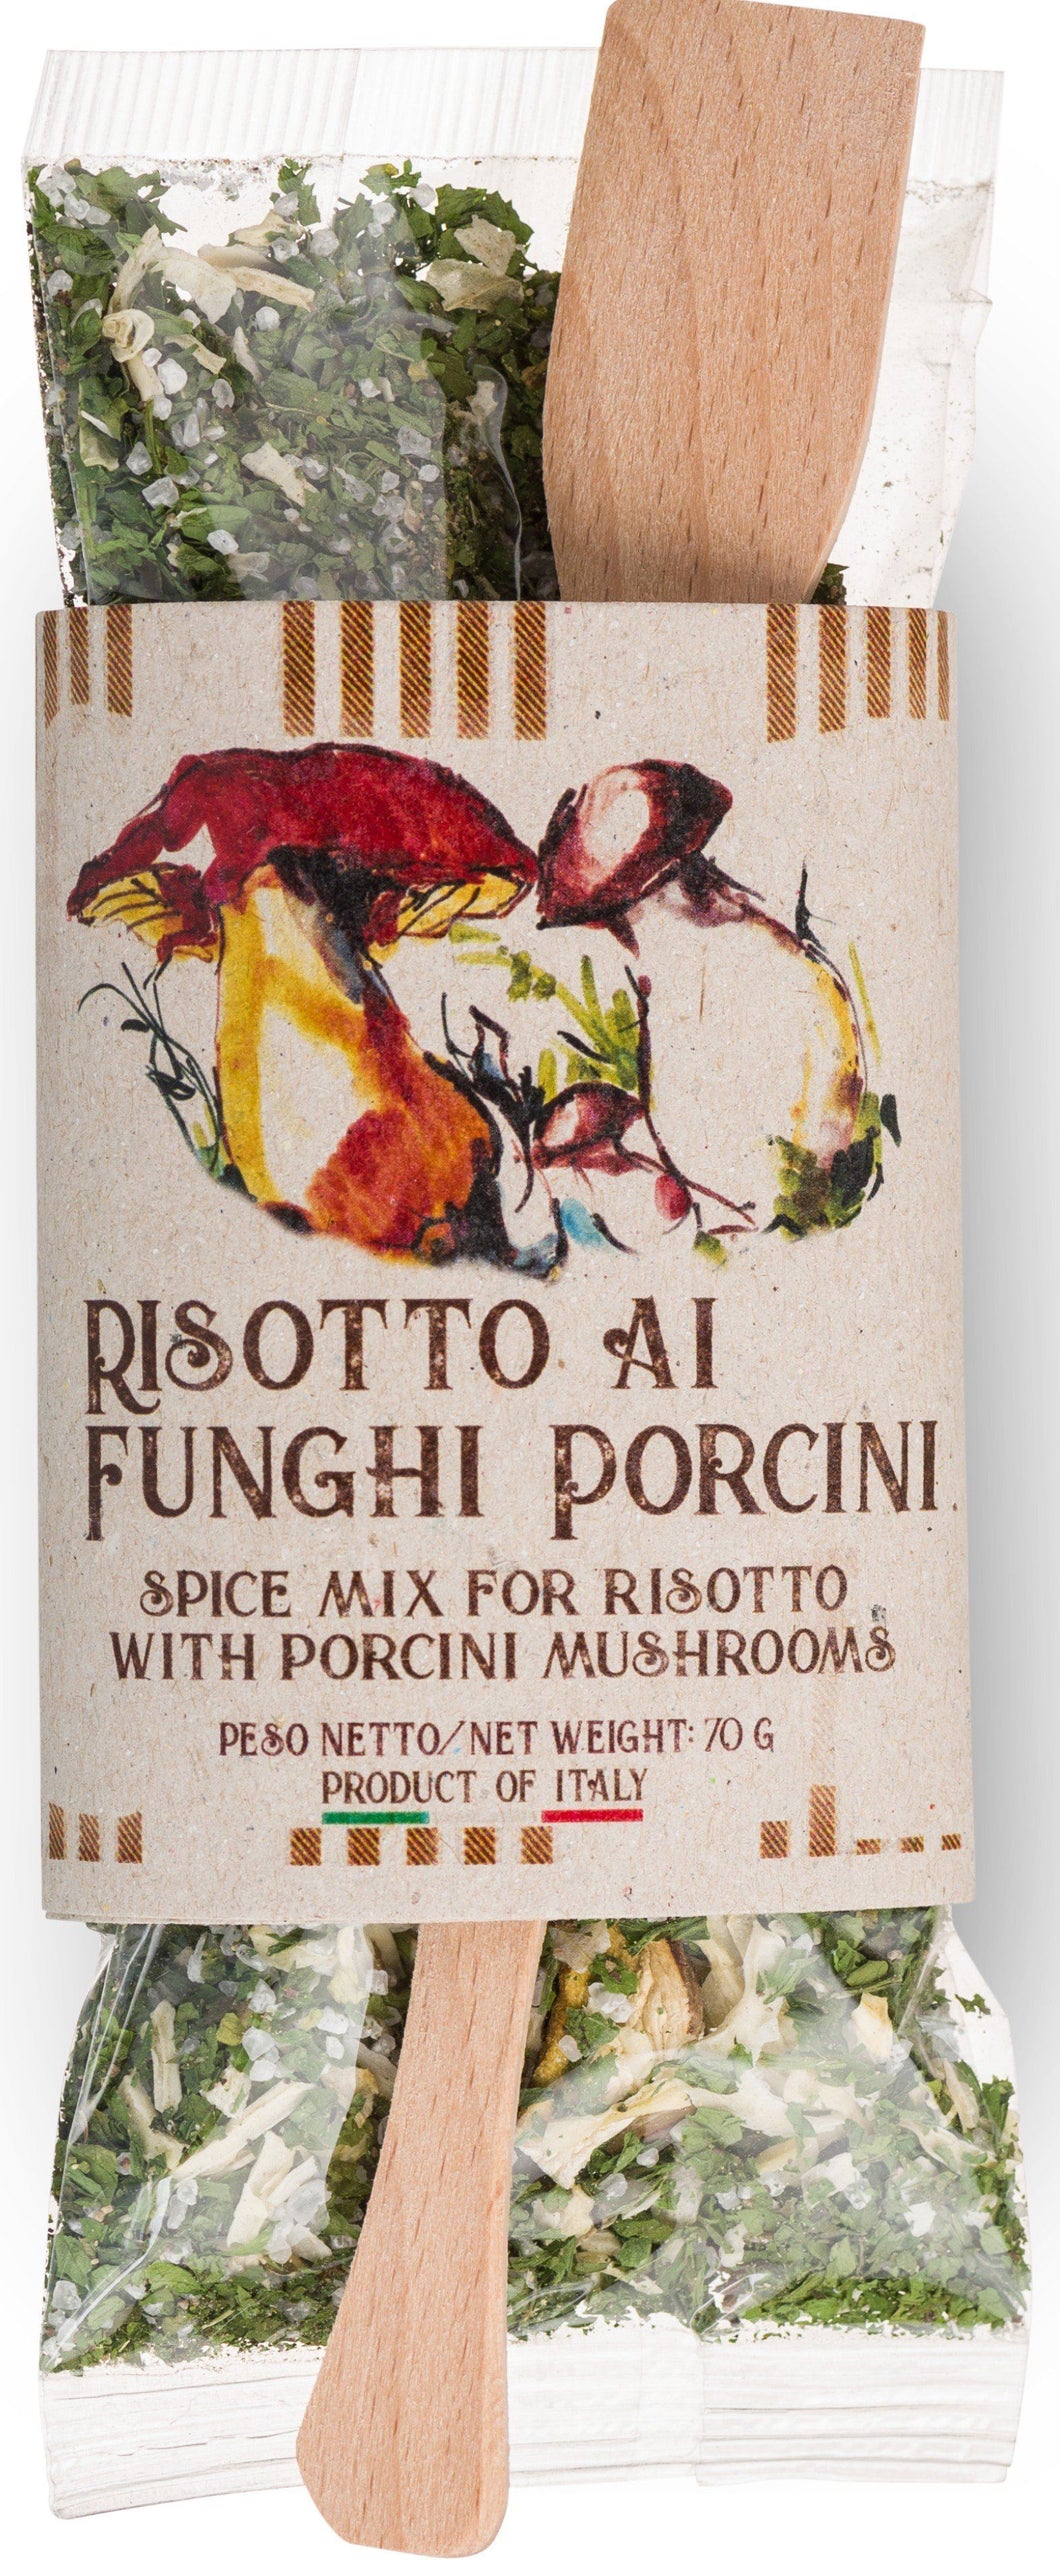 Ready Spice-Mix for Risotto ai Funghi Porcini by Casarecci di Calabria - 2.46 oz SPICES PREMIUM ITALIAN FOOD AT HOME 